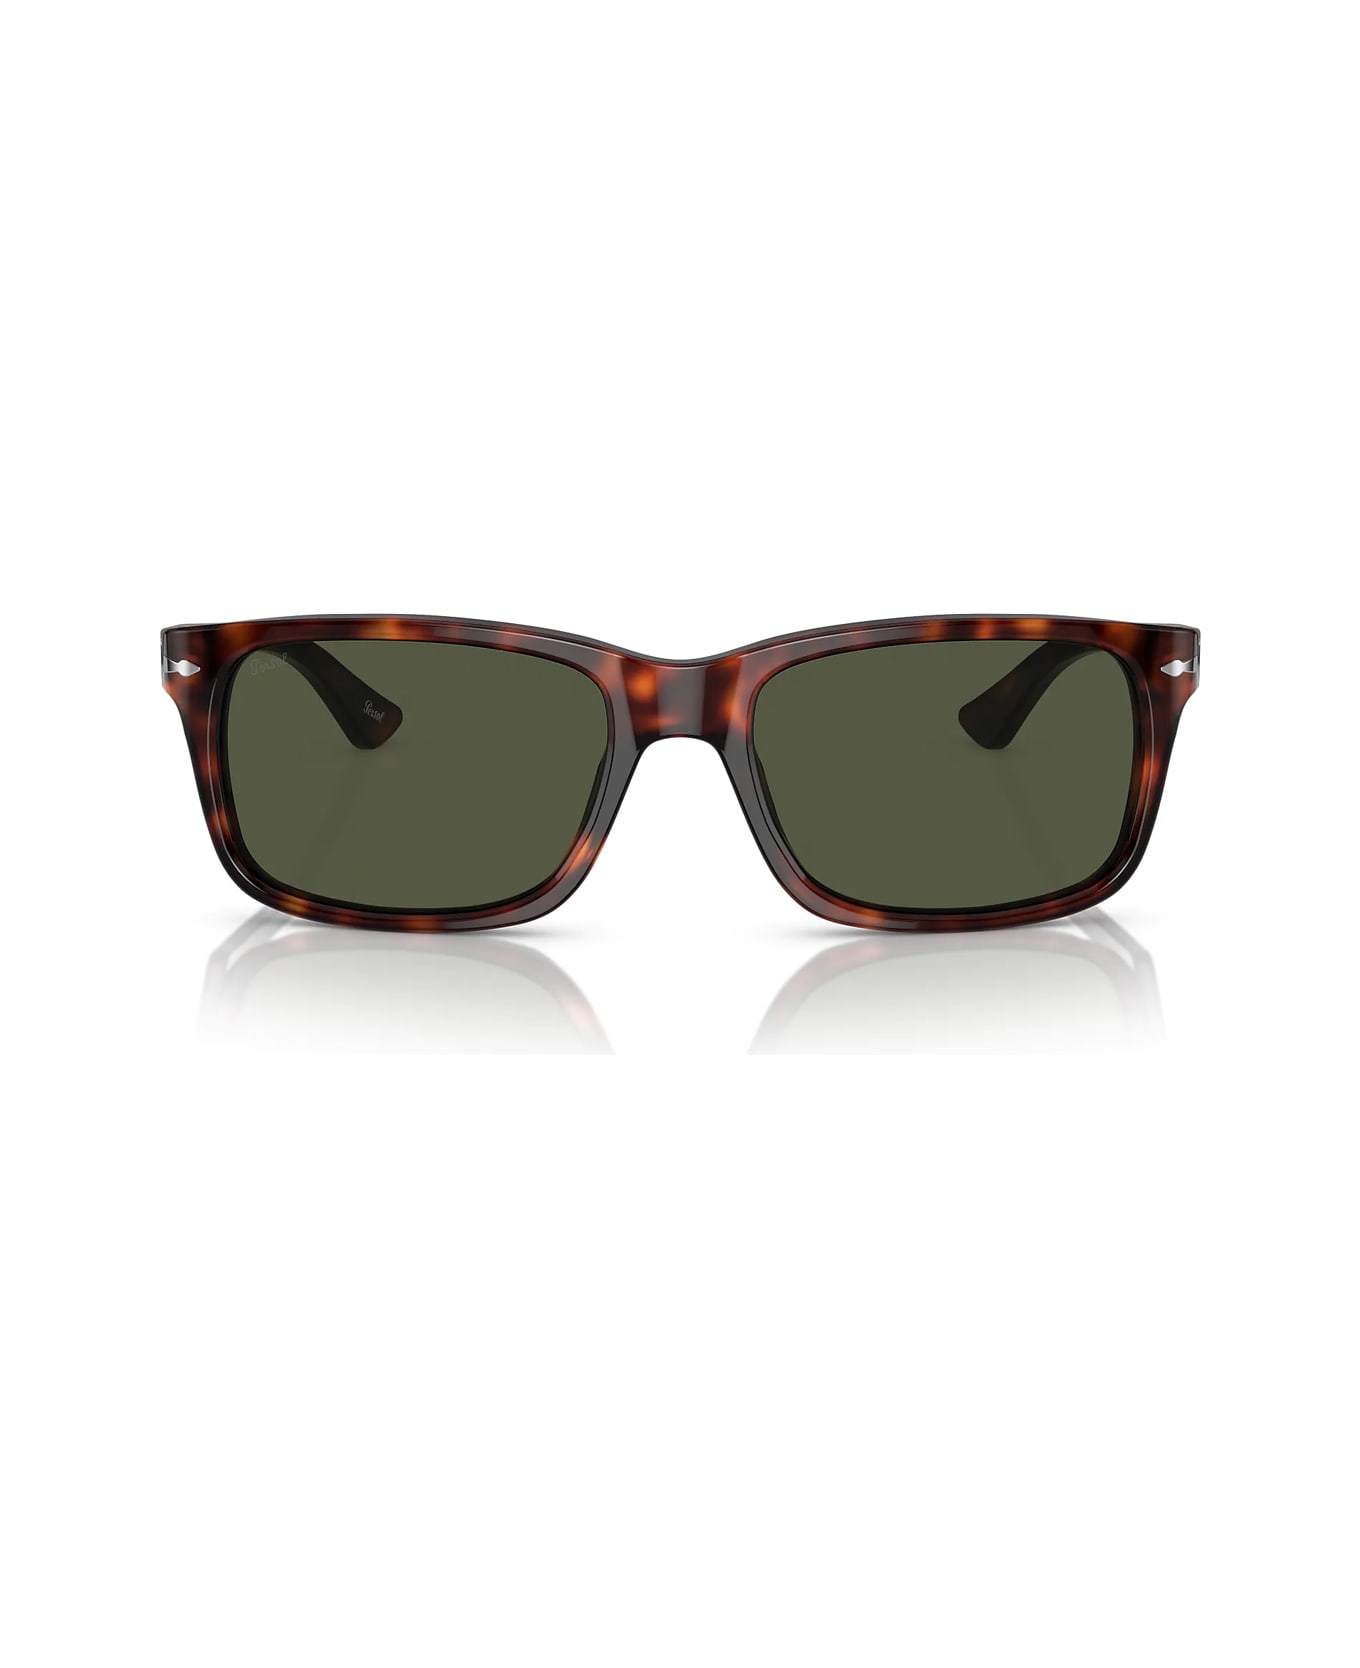 Persol Po3048s 24/31 Sunglasses - Marrone サングラス